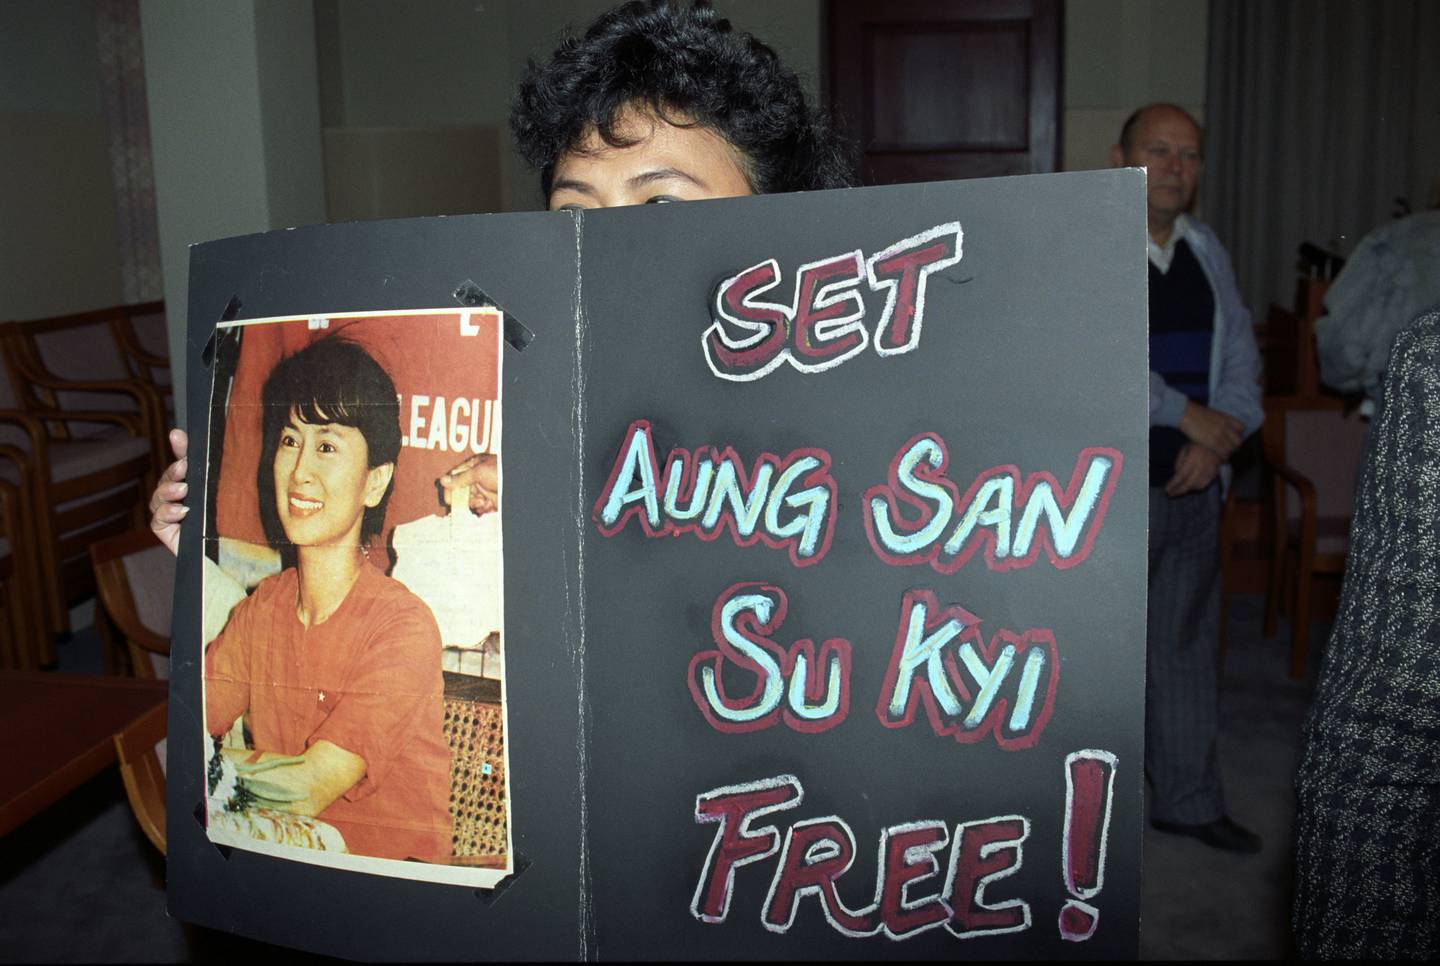 Oslo 19911014:  Nobelkomiteen erklærer at den burmesiske opposisjonslederen AUNG SAN SUU KYI får Nobels Fredspris for 1991. Prisutdelingen finner sted i desember. Bildet: Demonstrant med plakat som oppfordrer til frigivelse av Aung San Suu Kyi .  
FOTO: Bjørn Sigurdsøn/NTB